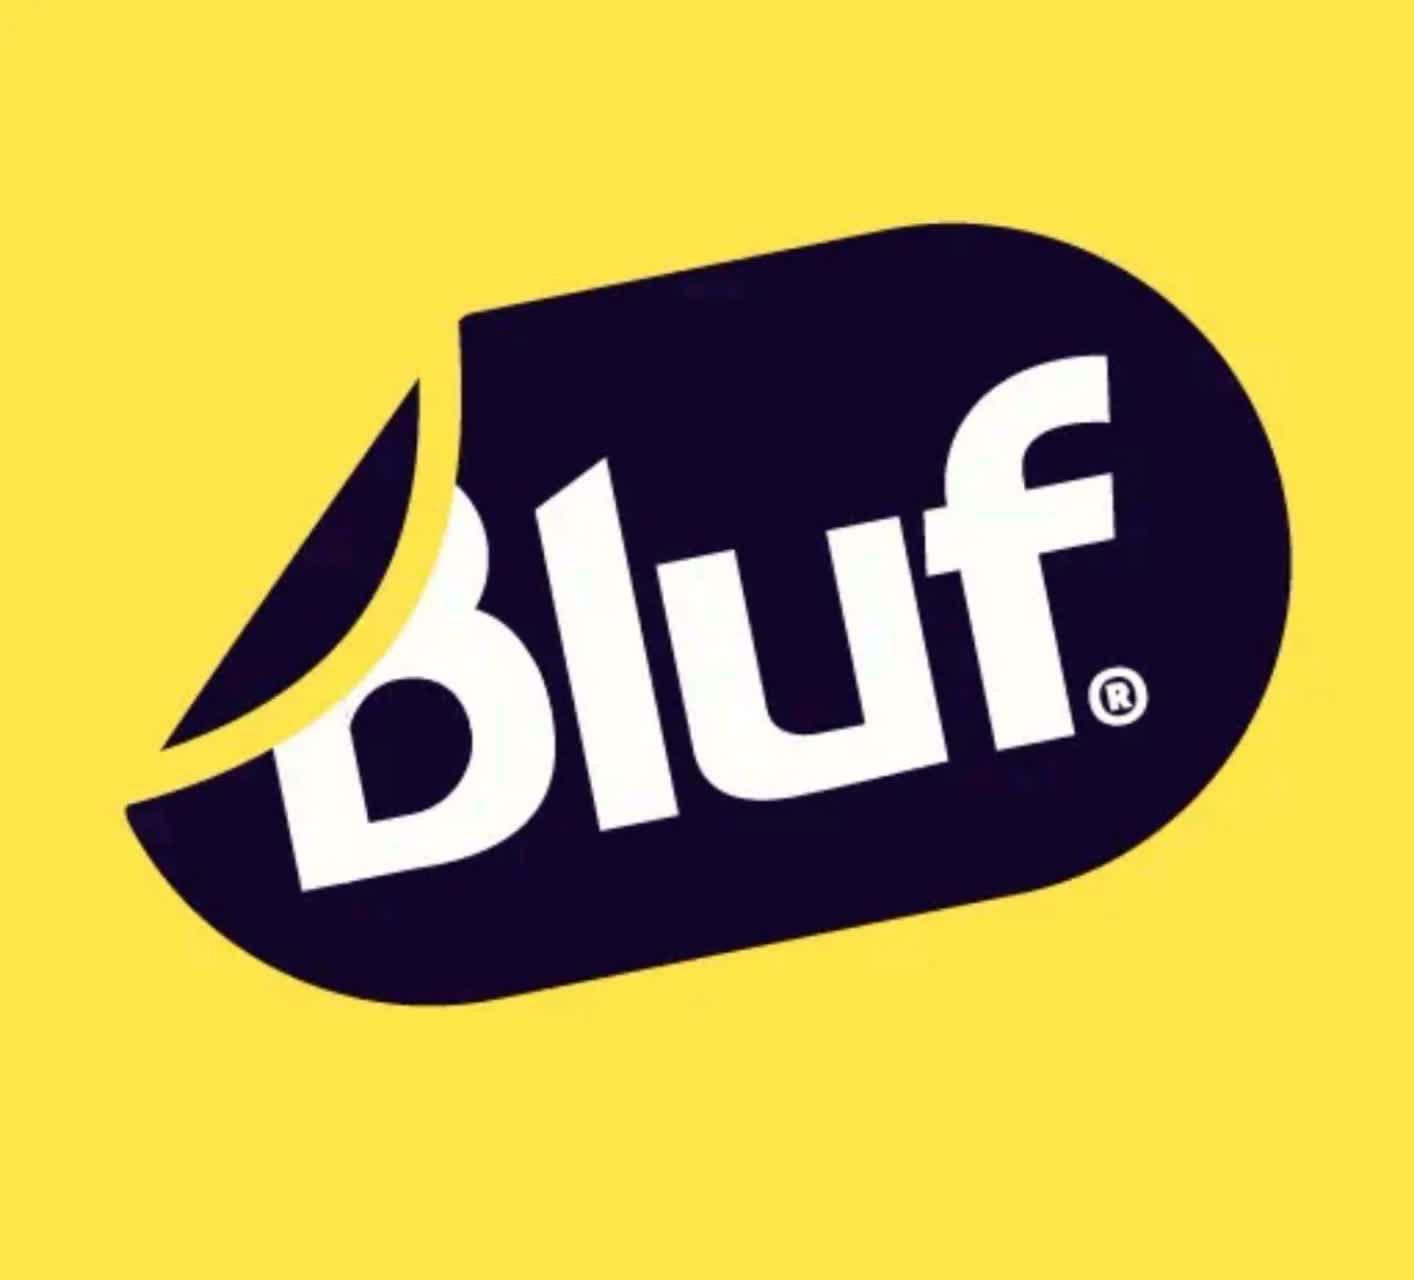 دانلود فیلتر شکن Bluf Vpn نسخه جدید